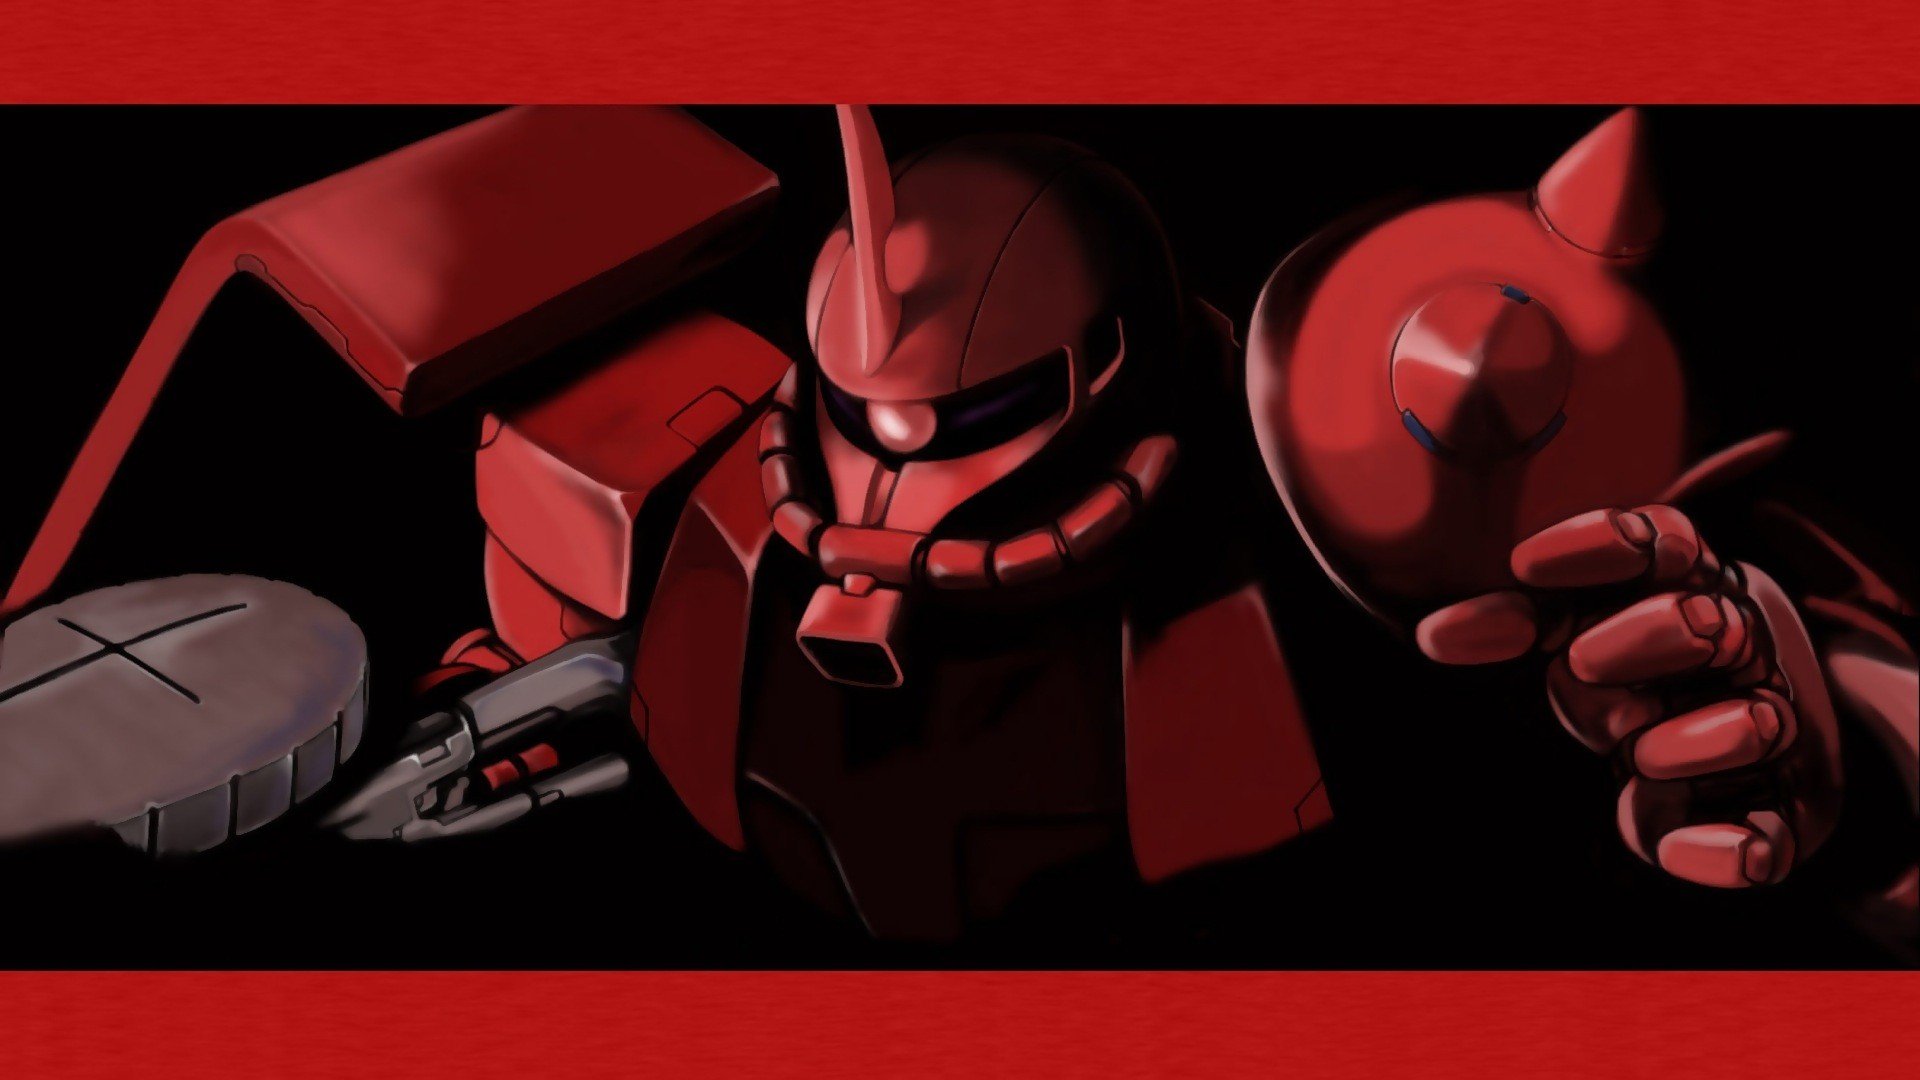 Zaku From Gundam Live Wallpaper